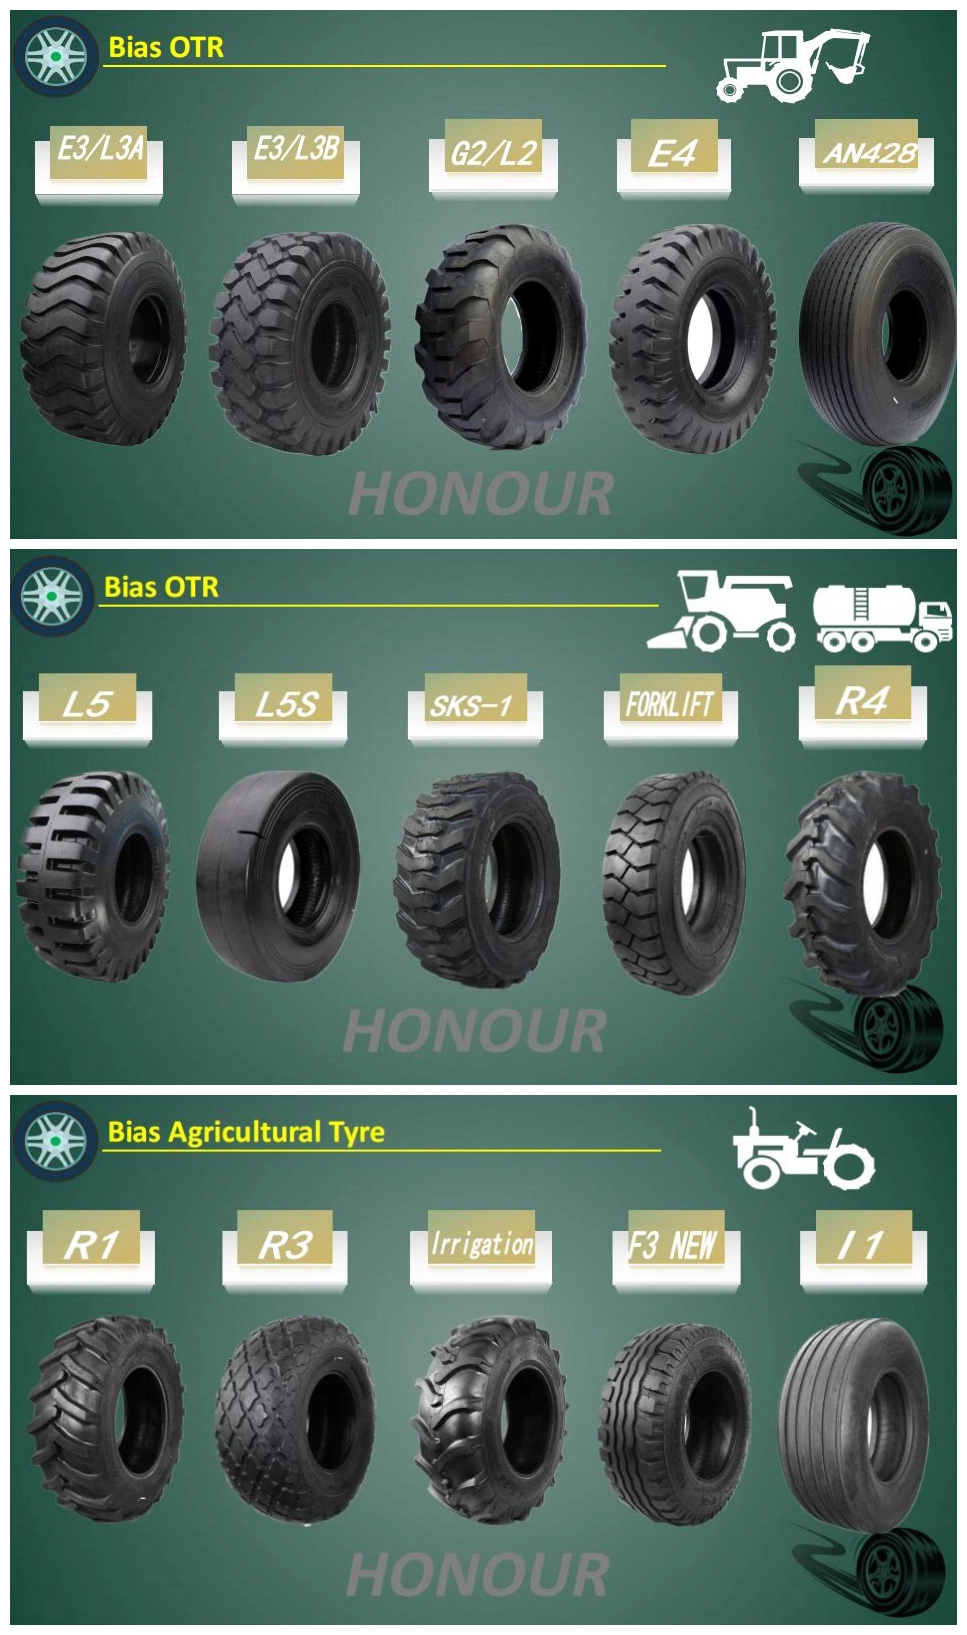 Honour Condor Giant Bias High Quality Nylon OTR Tires Earthmover Tires Grader Loader Dozer Dump Truck Tyre (1200-20 1400-20 1400-25 1300-25 1400-24)